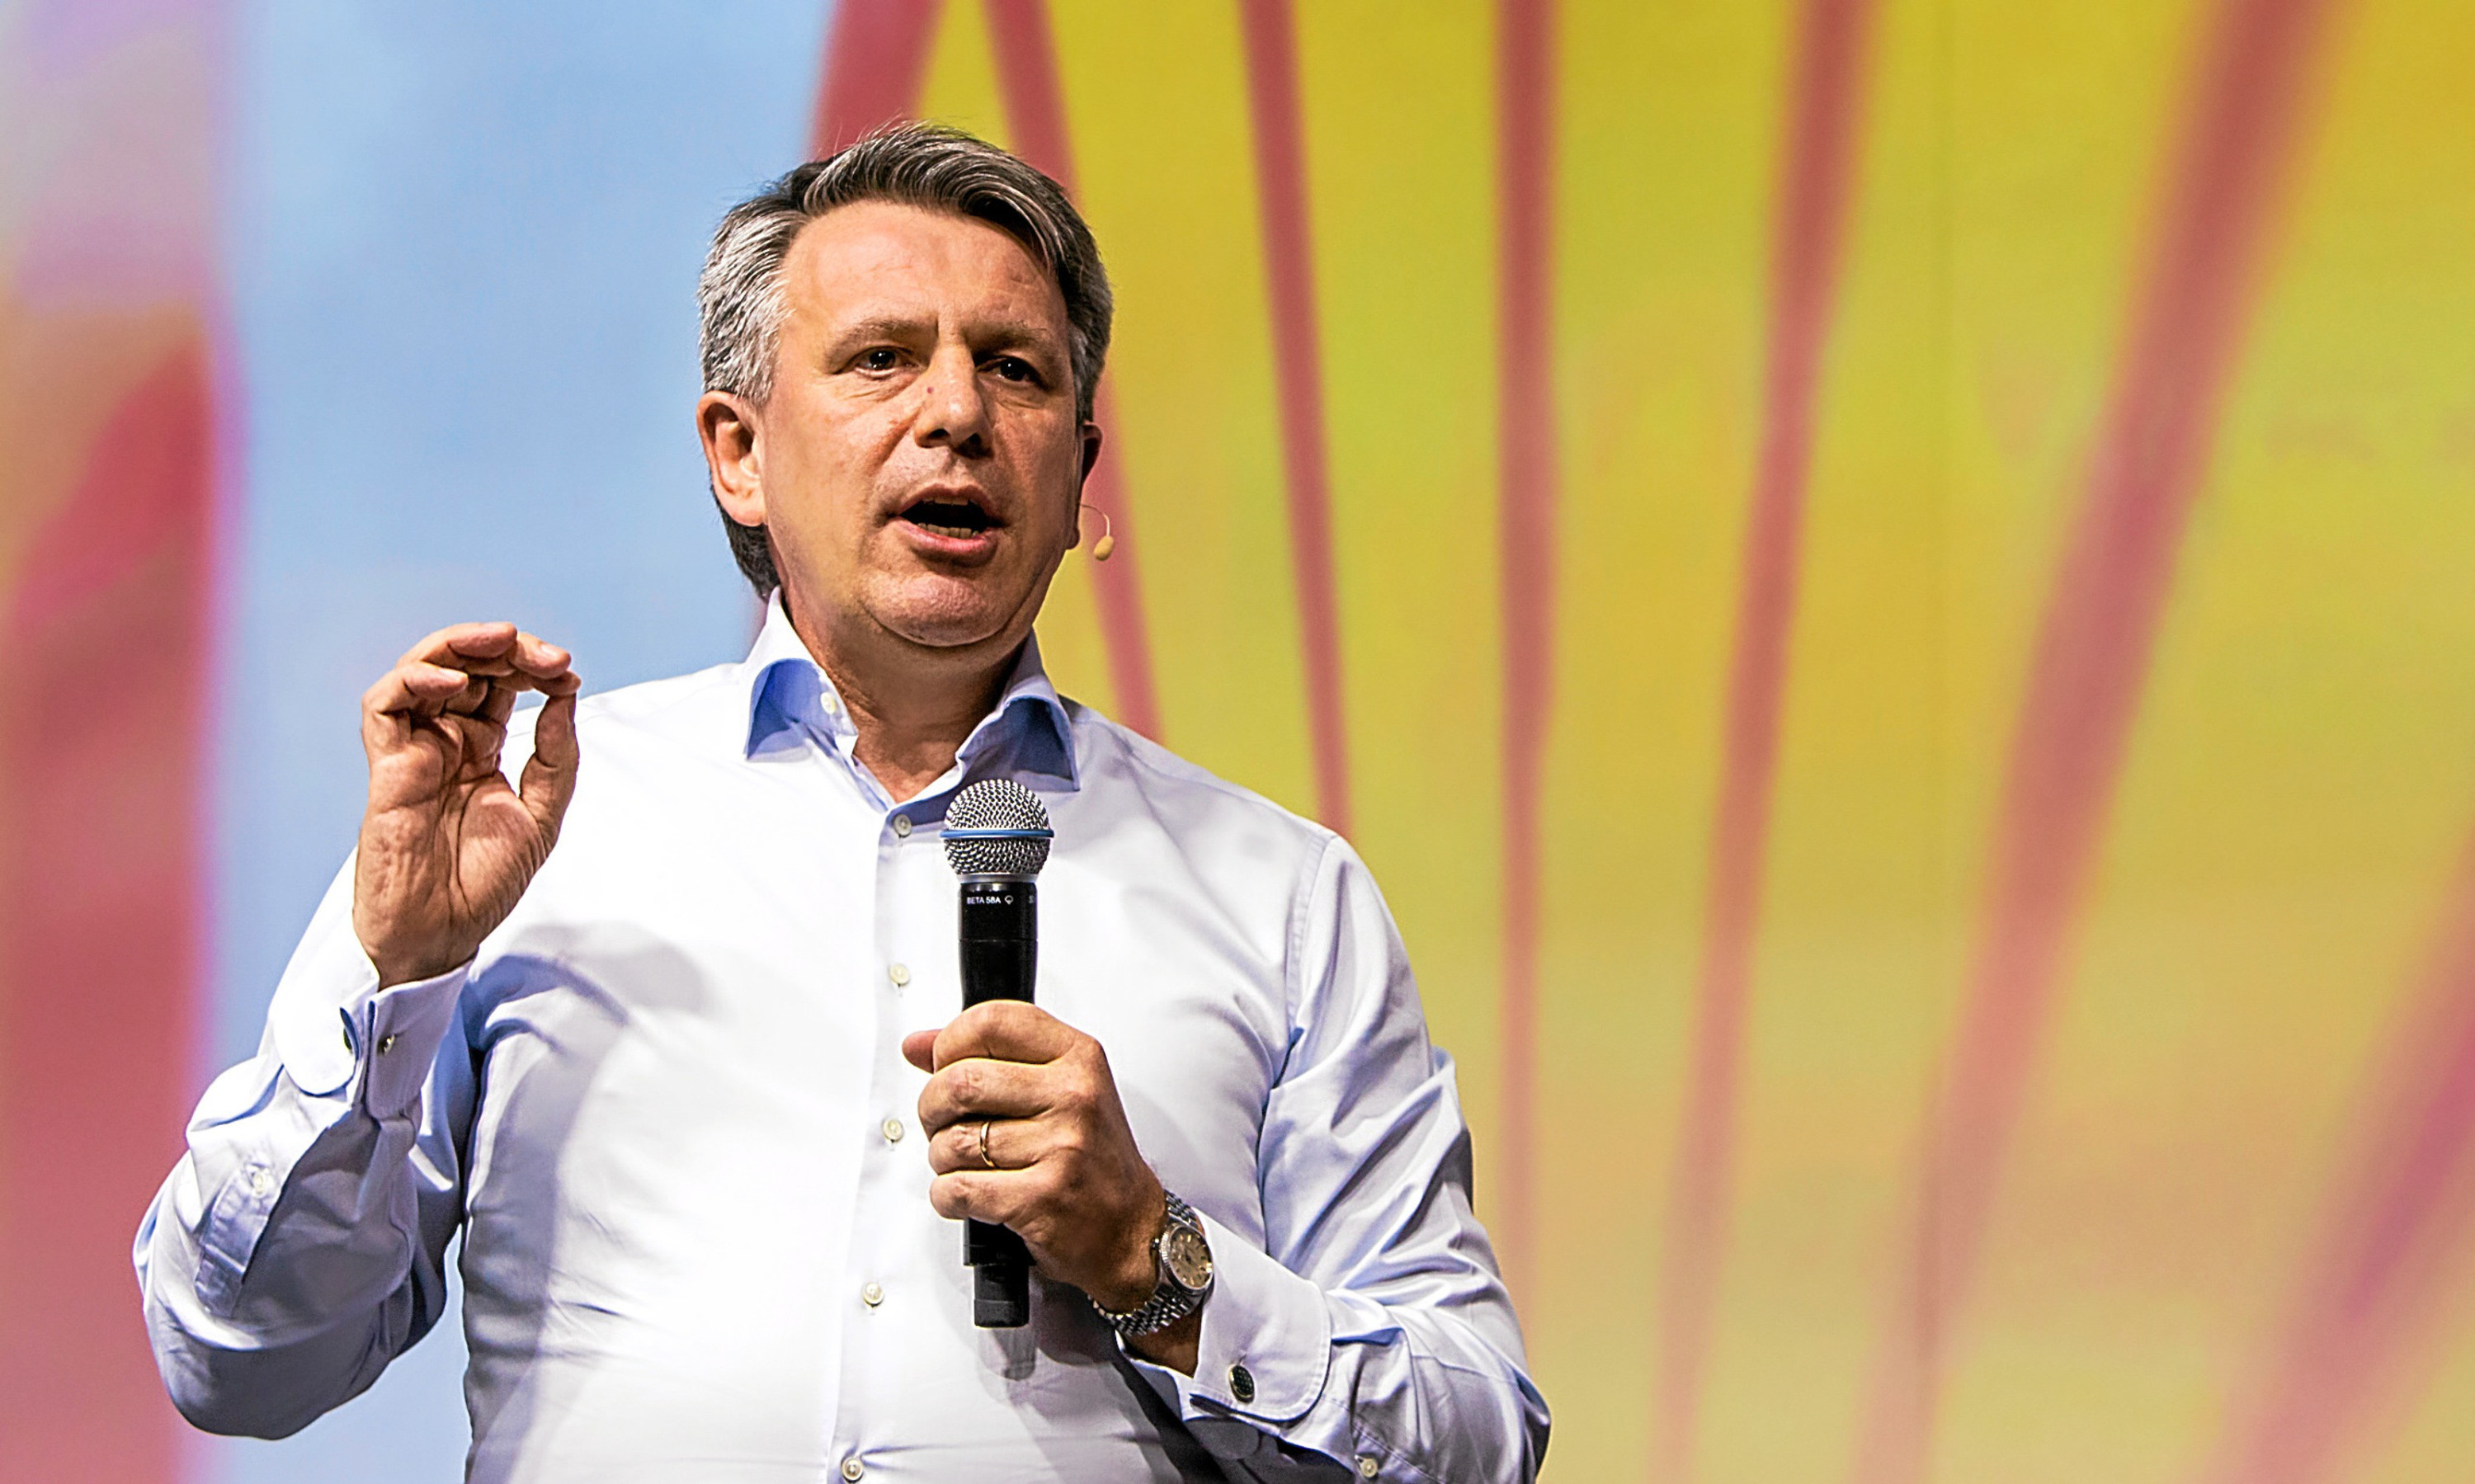 Shell Chief executive Ben van Beurden